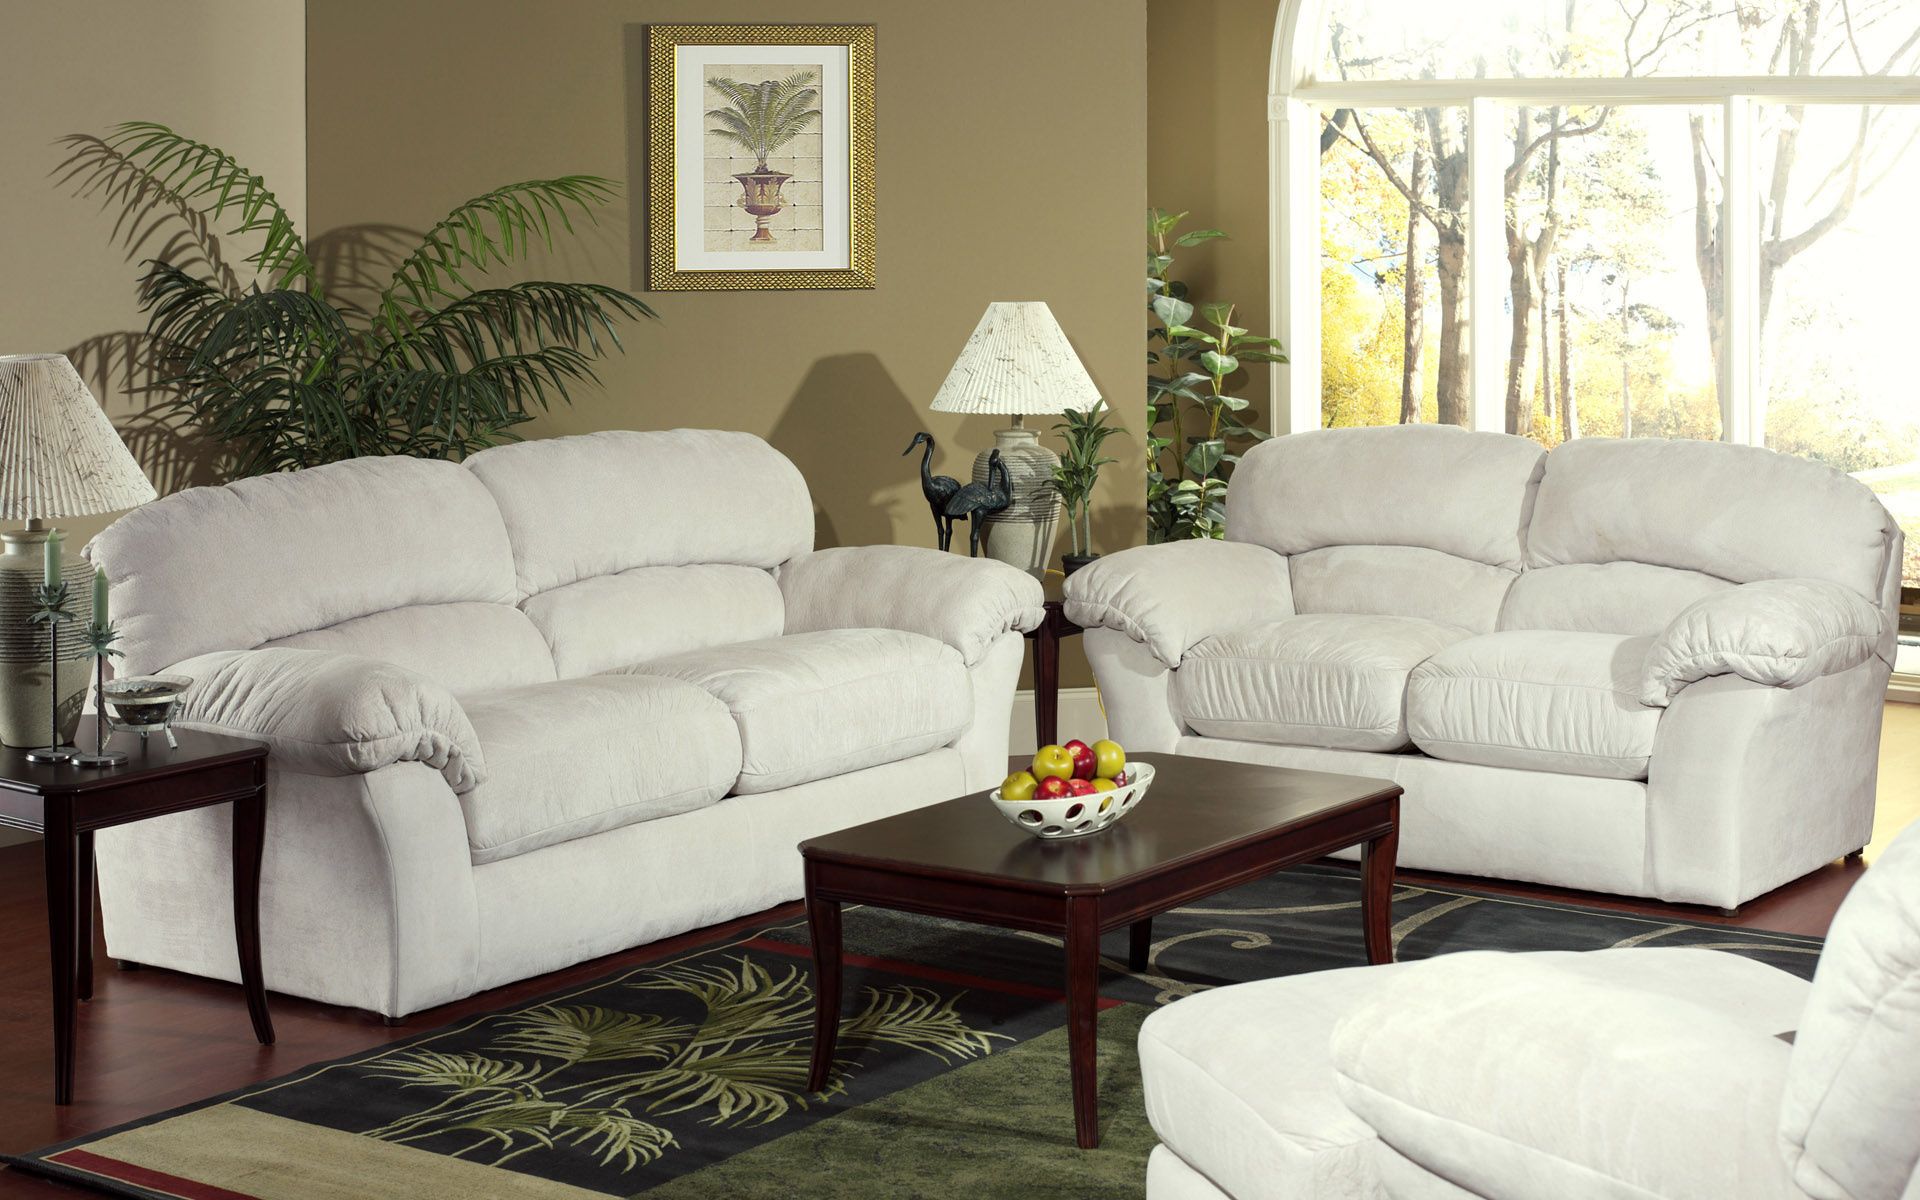 гостинная, белые диваны, интерьер, комната, living room, white sofas, interior room